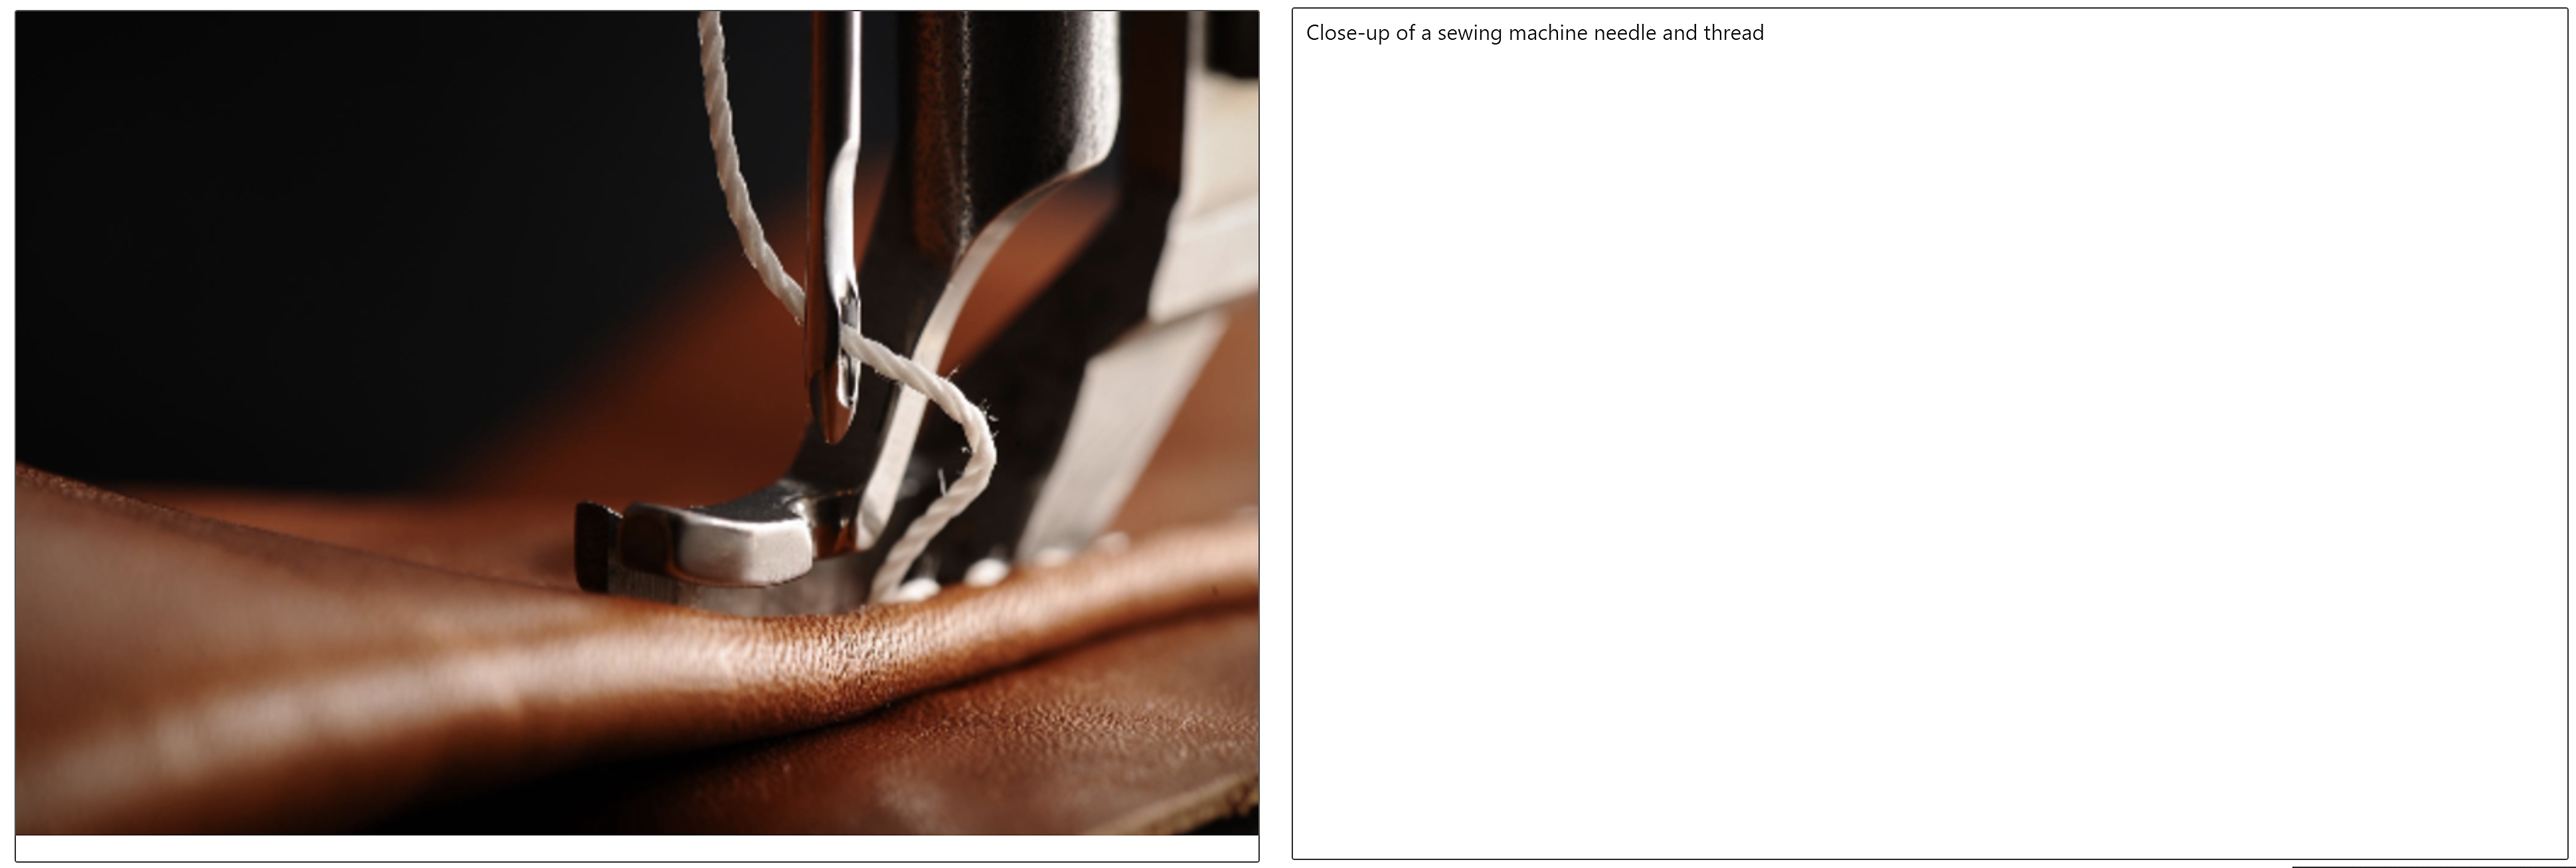 革を貫通するミシンの針と糸のアップと、その横の画像のキャプション 